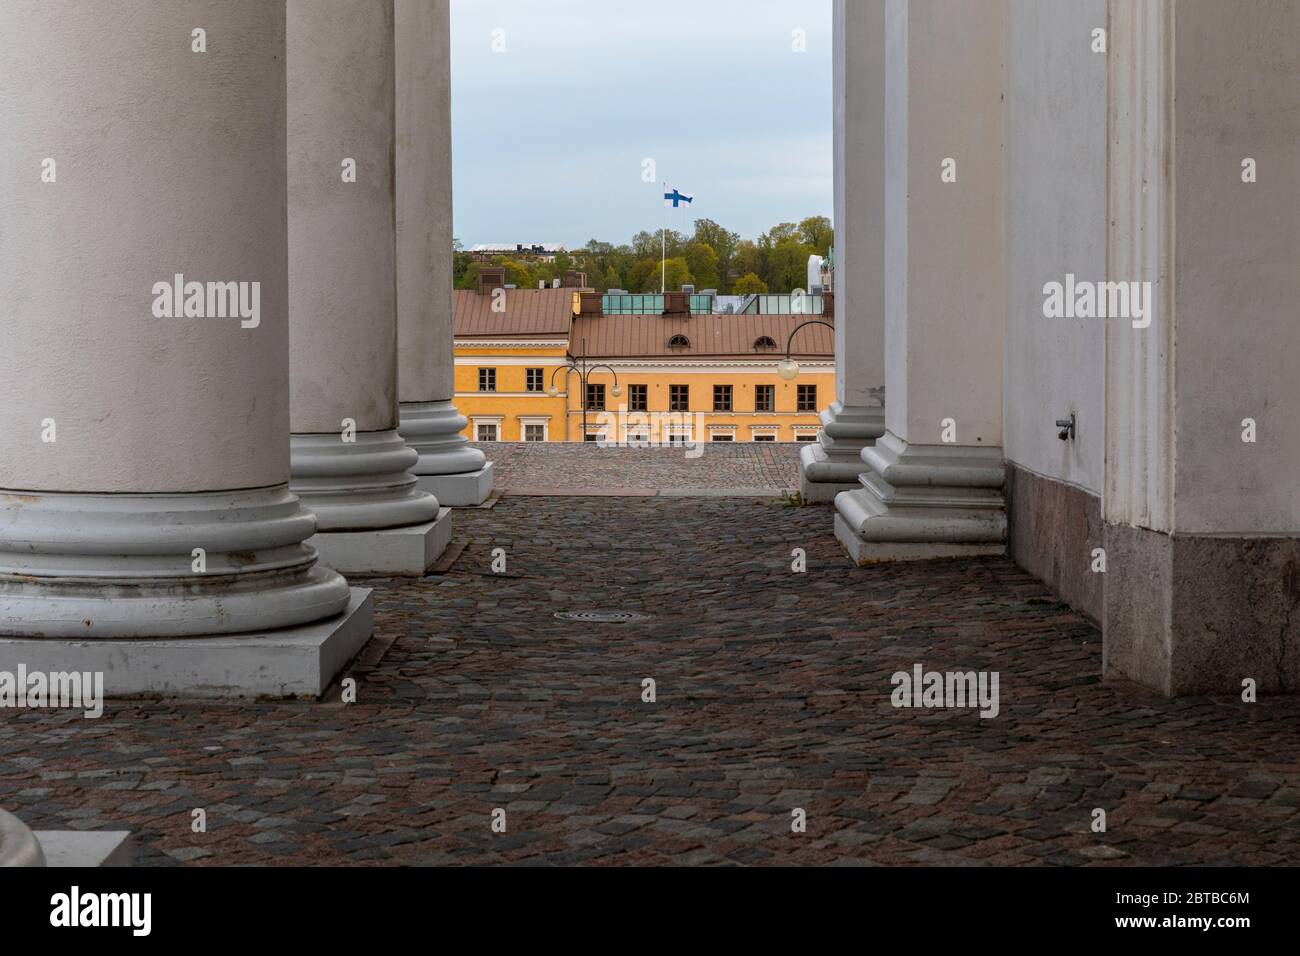 Colonnes architecturales, toits d'Helsinki et drapeau finlandais volant haut sans personne en scène. Banque D'Images